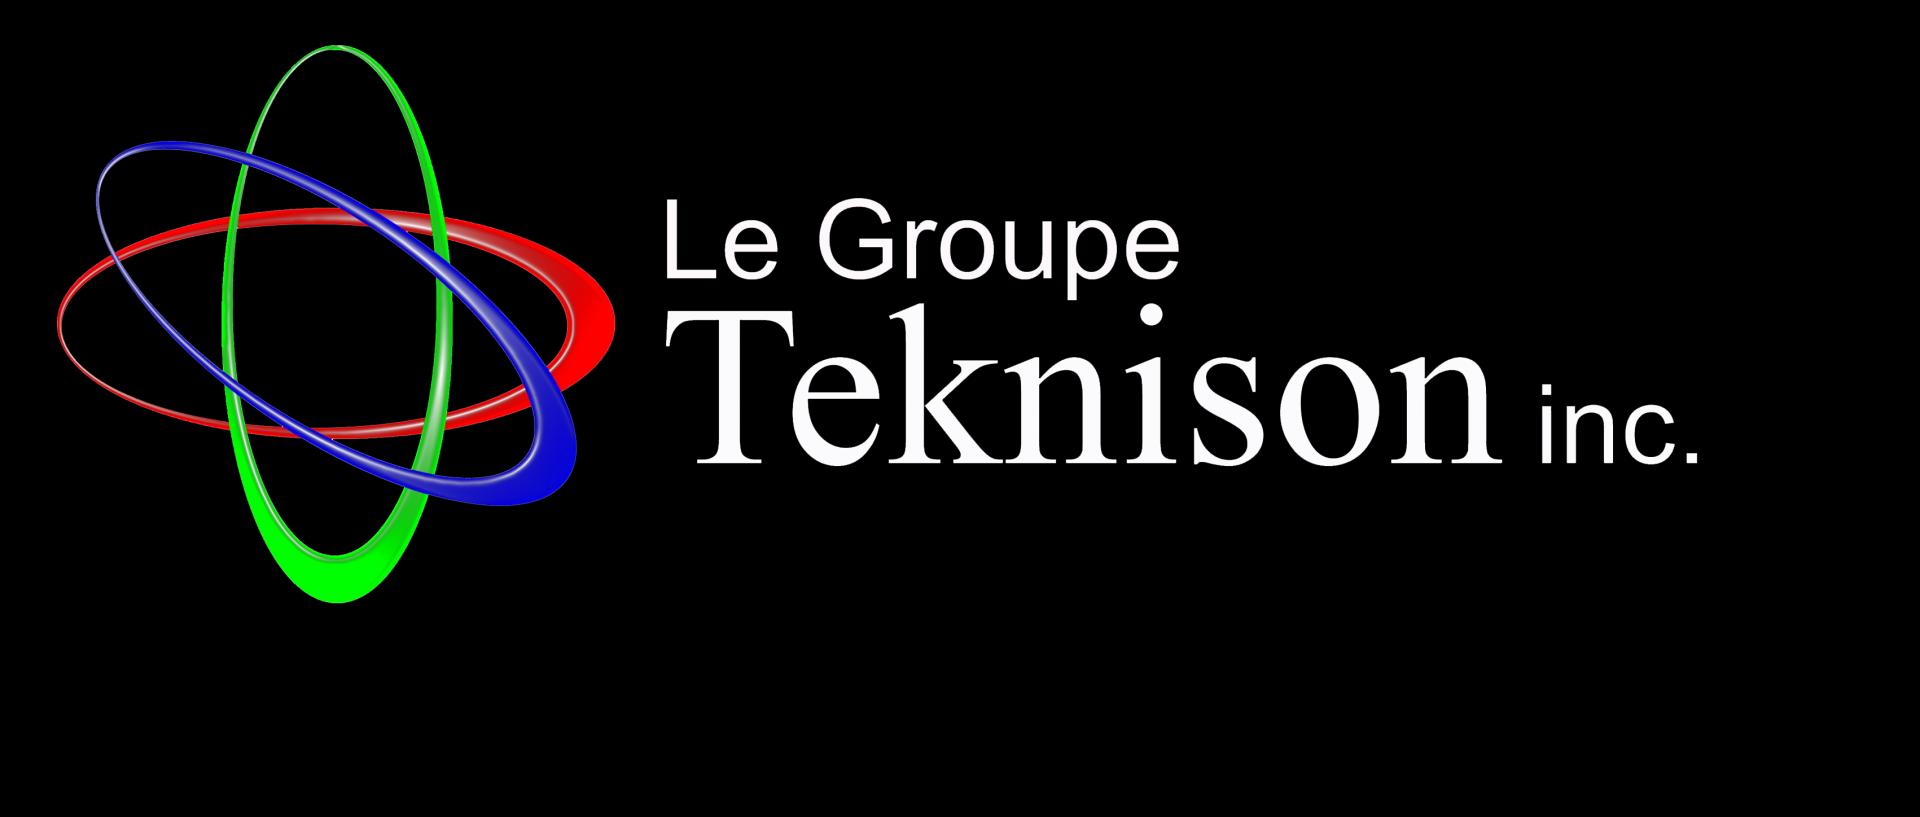 Le groupe Teknison Inc